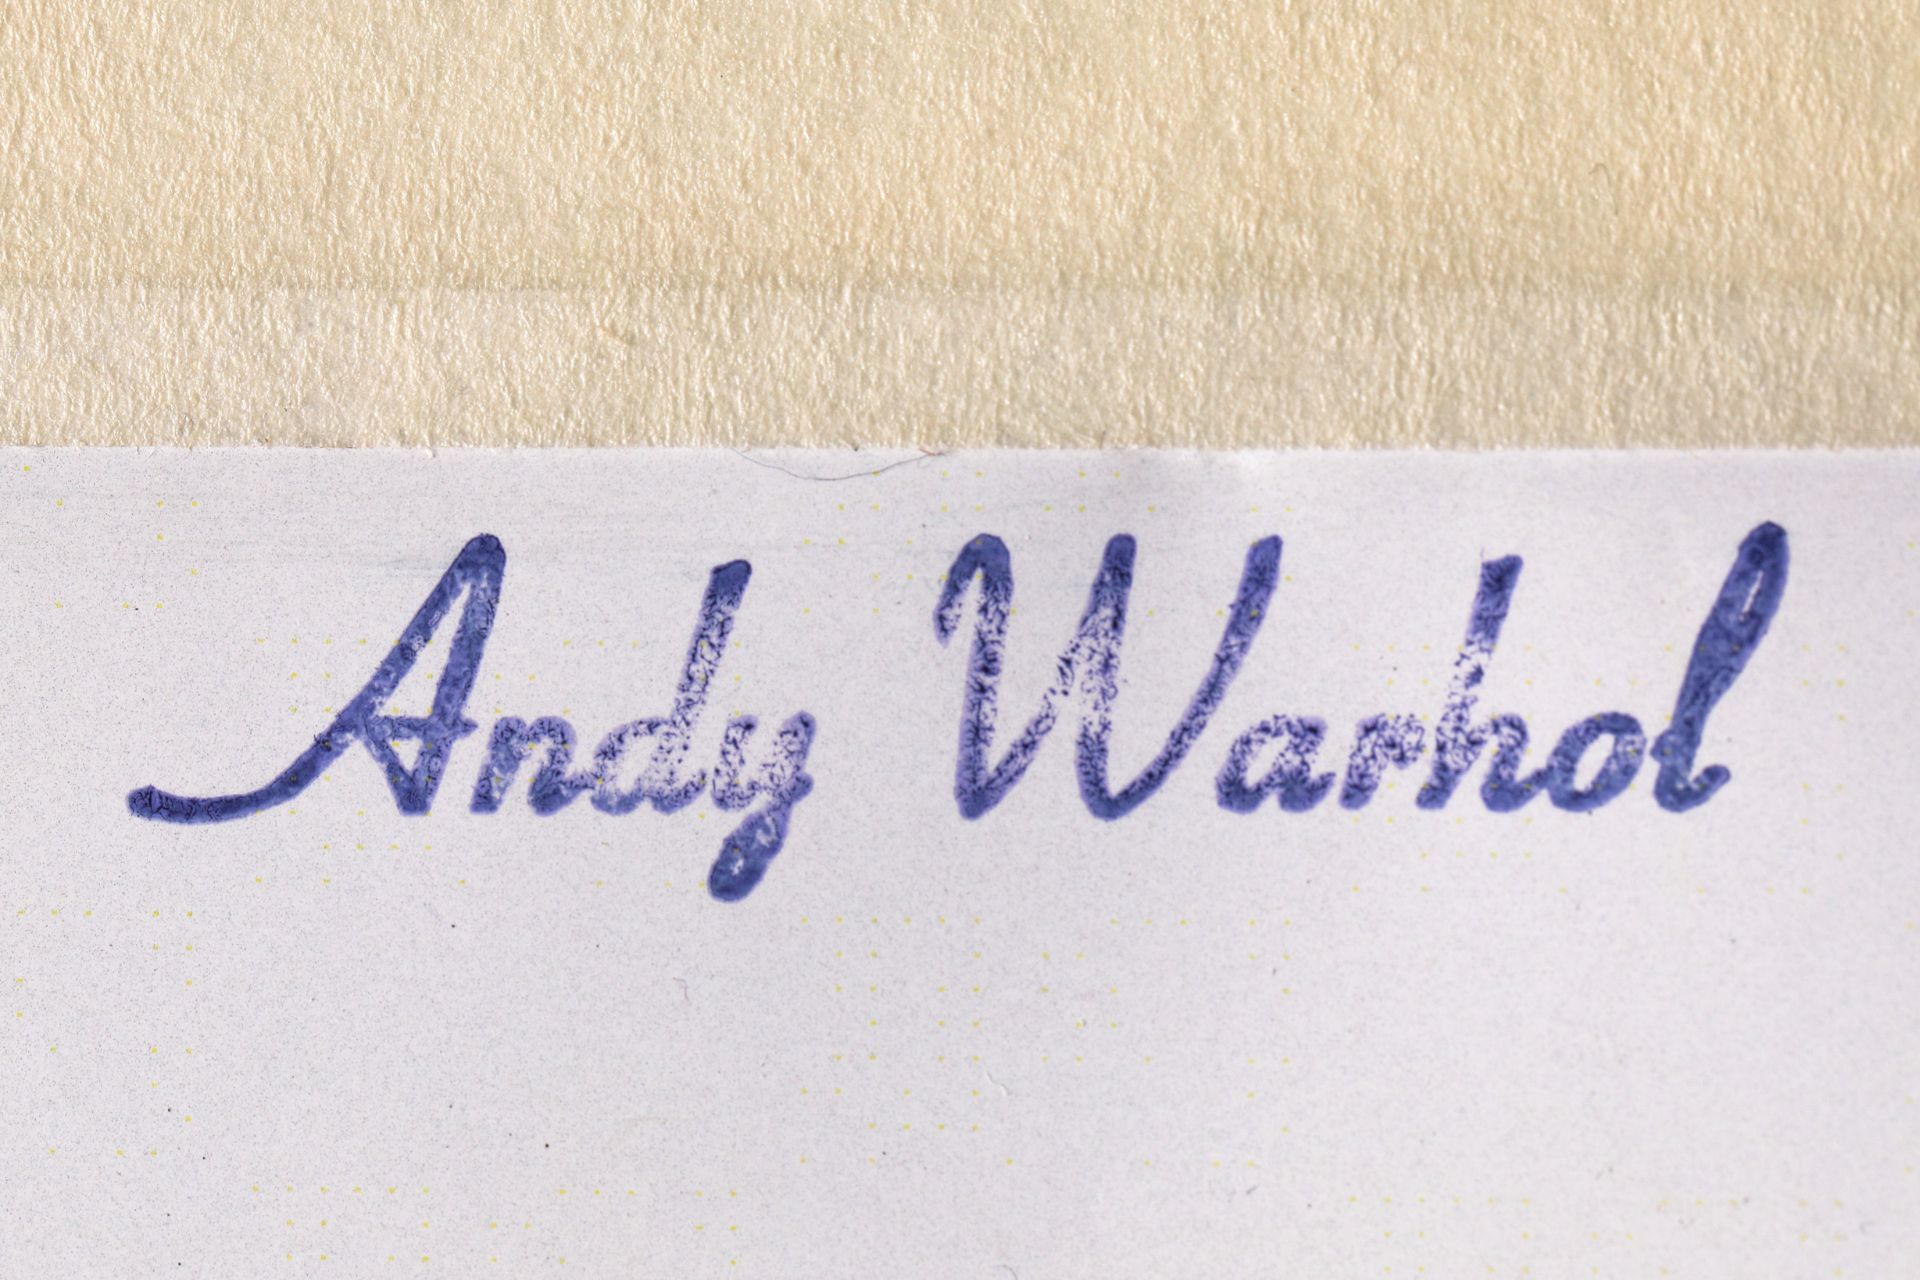 Andy Warhol, Mini Portfolio Mick Jagger mit 10 Drucken, 1975, signiert - Bild 14 aus 16